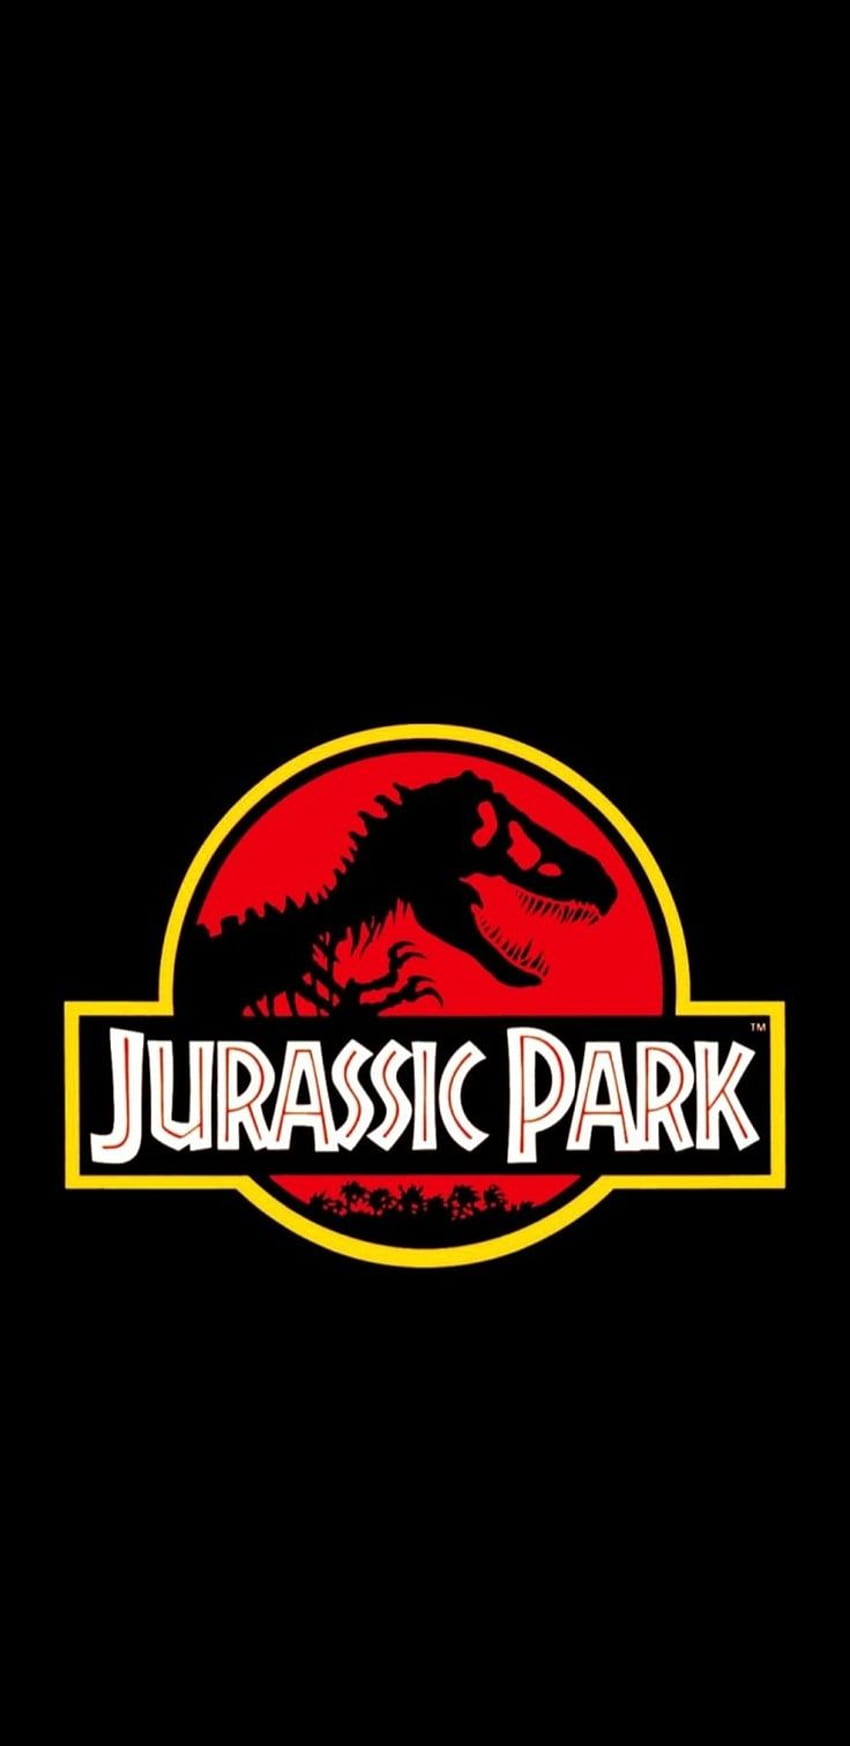 Richard Channing adlÄ± kullanÄ±cÄ±nÄ±n Jurassic Park panosundaki ピン、ジュラシック・パークのロゴ HD電話の壁紙